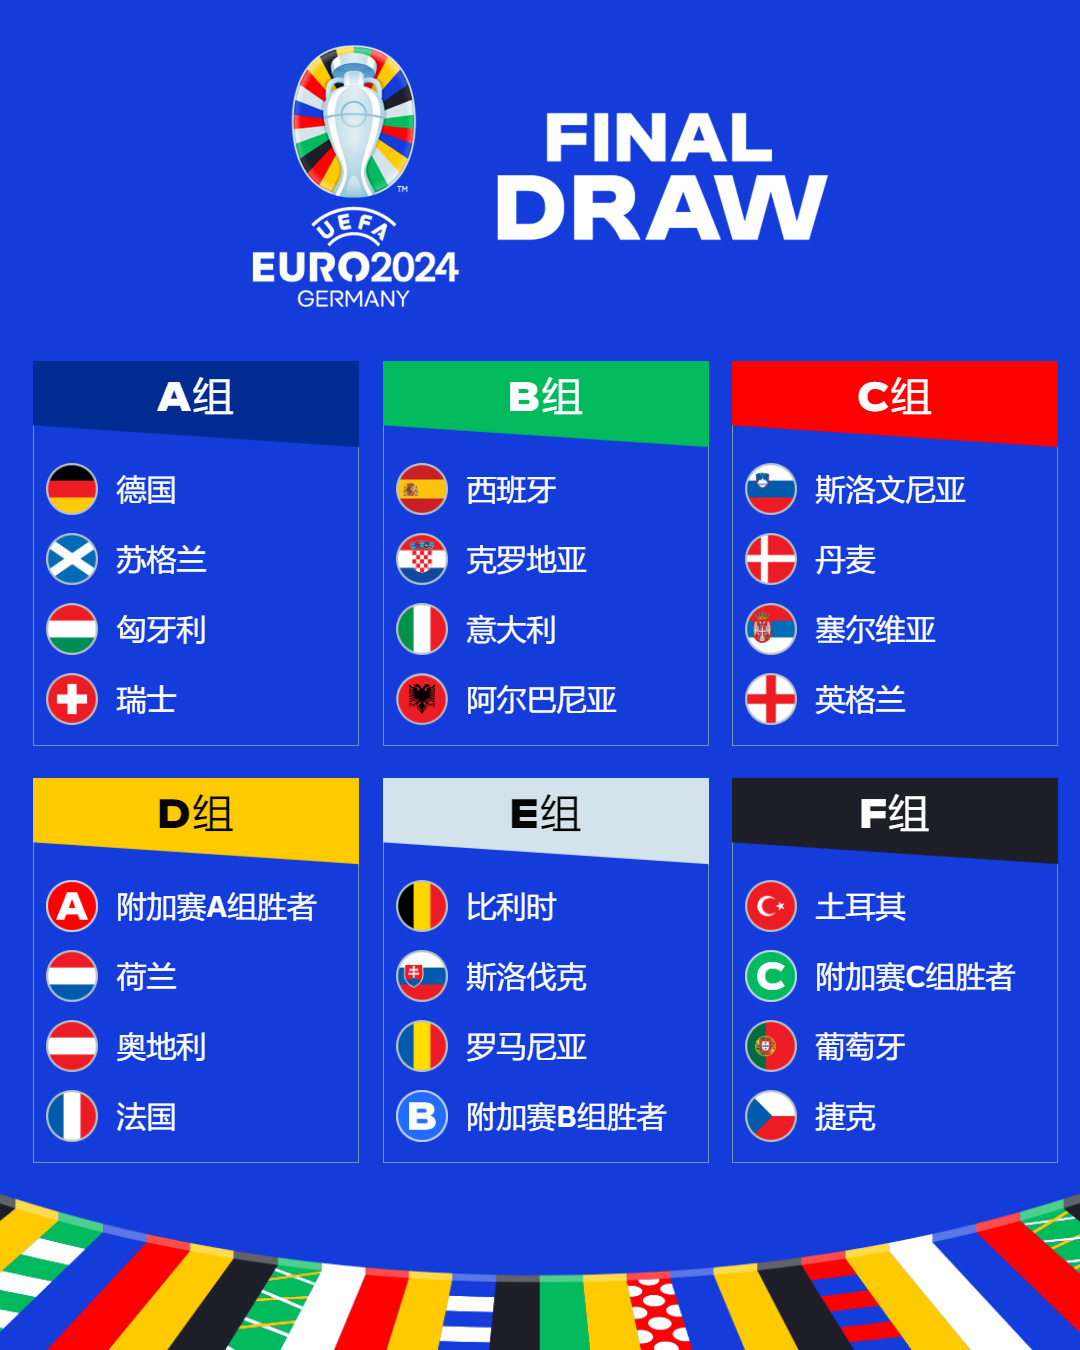 中国体育彩票助阵足球盛典 欧洲杯竞彩明日开售